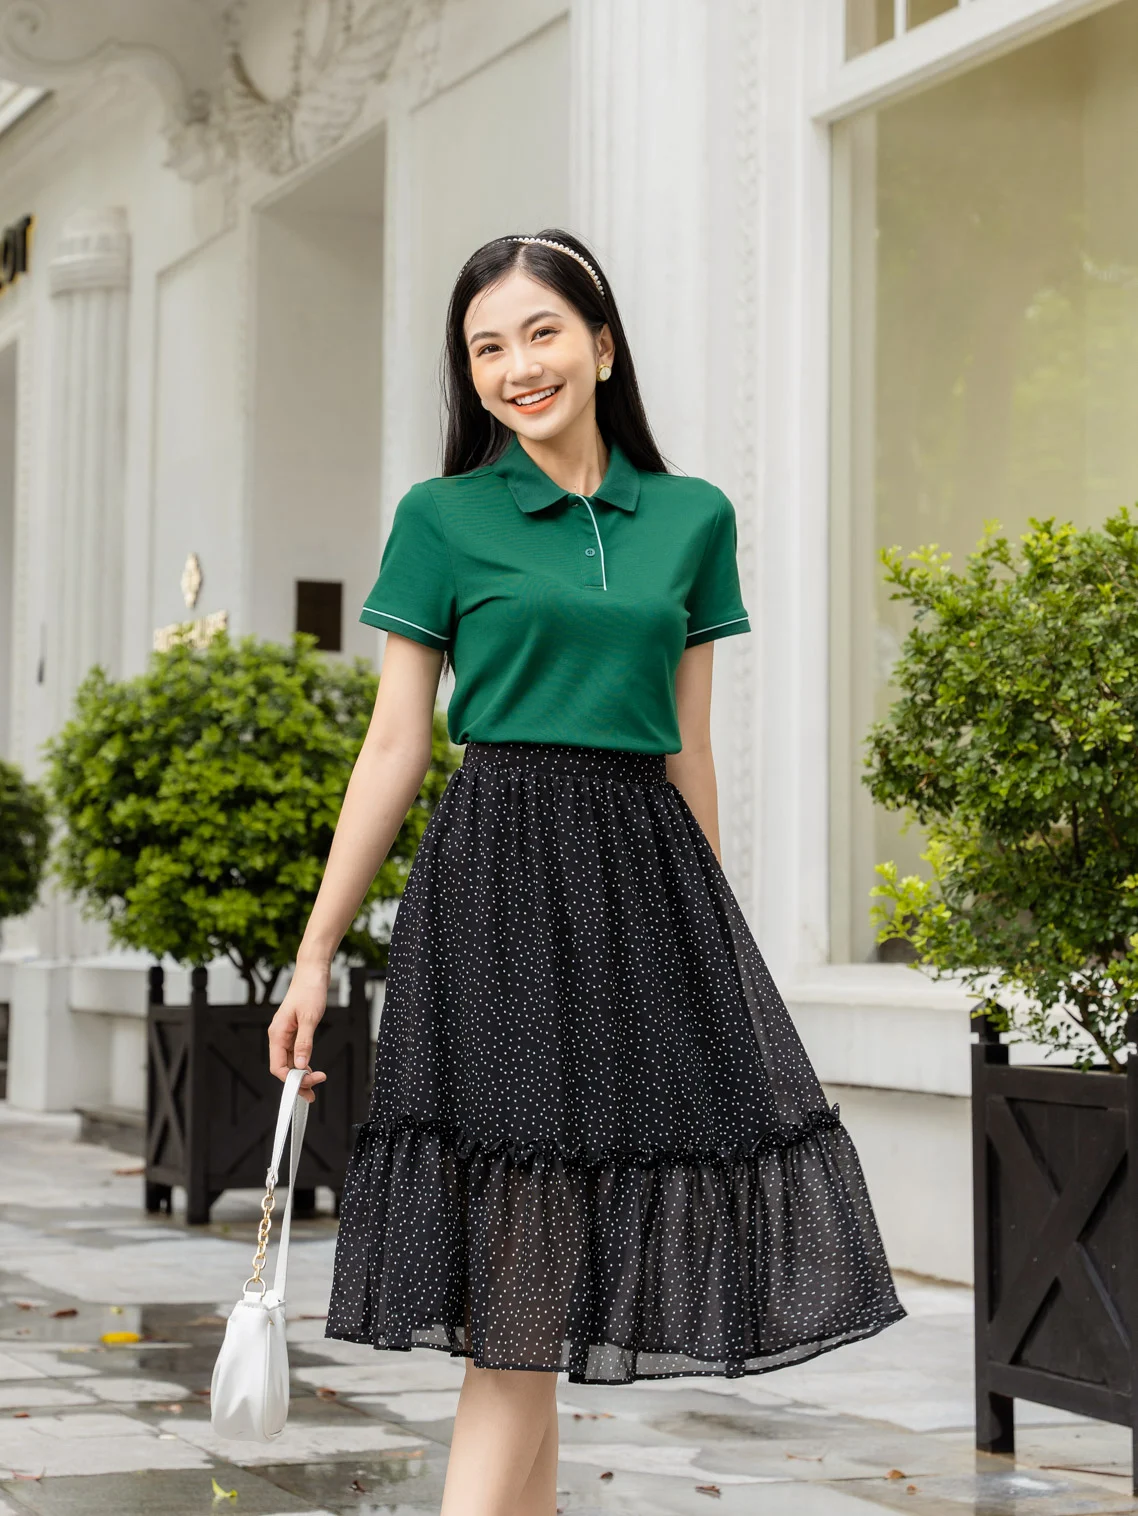 Mua Chân Váy Hoa Nữ New Design Thiết Kế Dáng Váy Dài Xòe, Họa Tiết Hoa Thêu  Phong Cách Hàn Quốc Trẻ Trung ,Vải Mới ,Mịn Đẹp CV0080 - đen - M